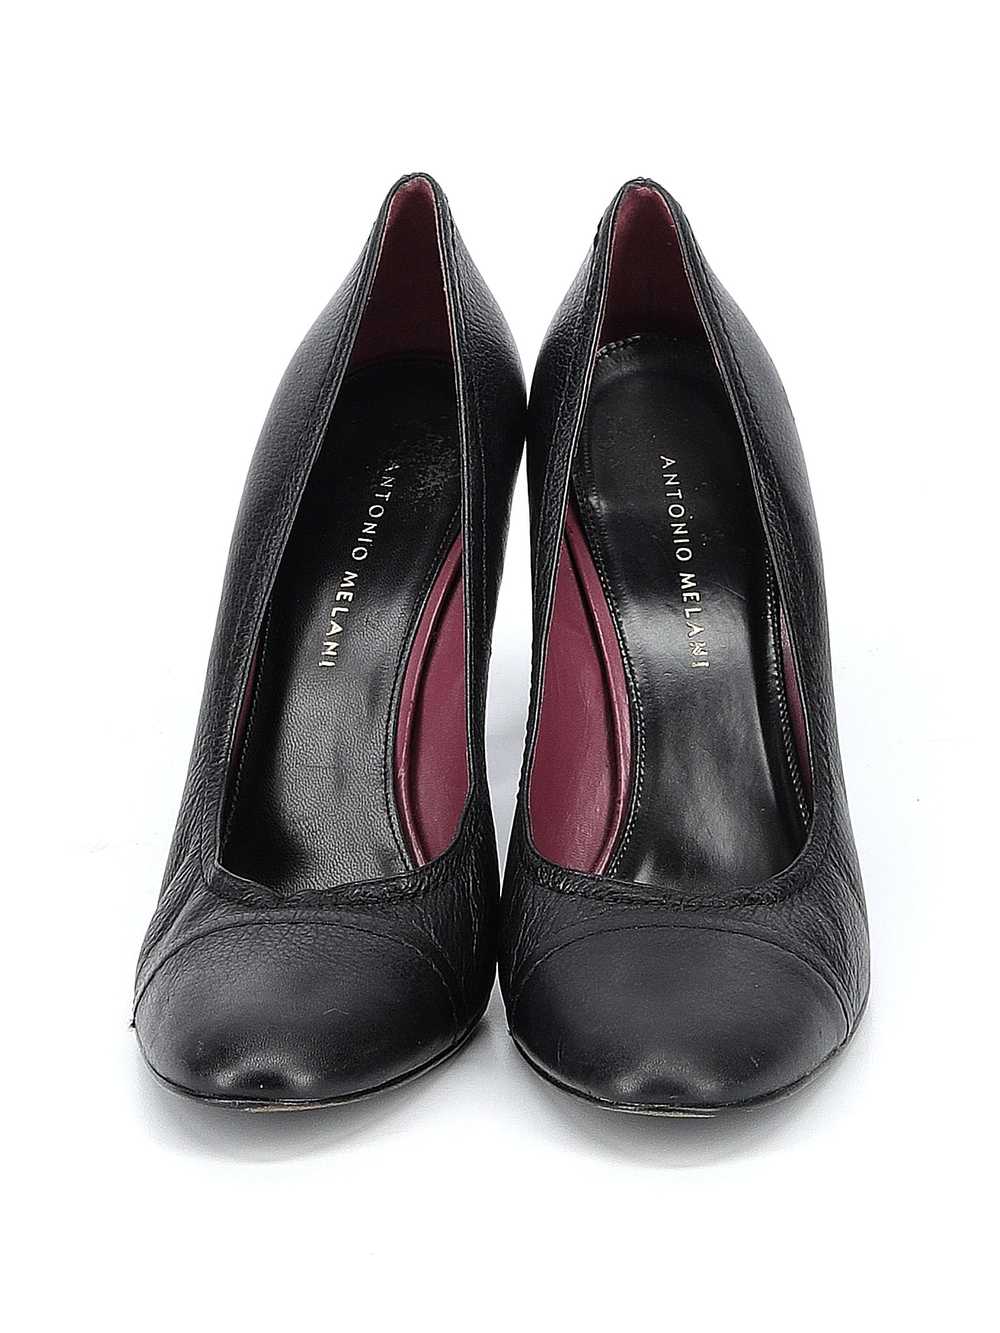 Antonio Melani Women Black Heels 10 - image 2